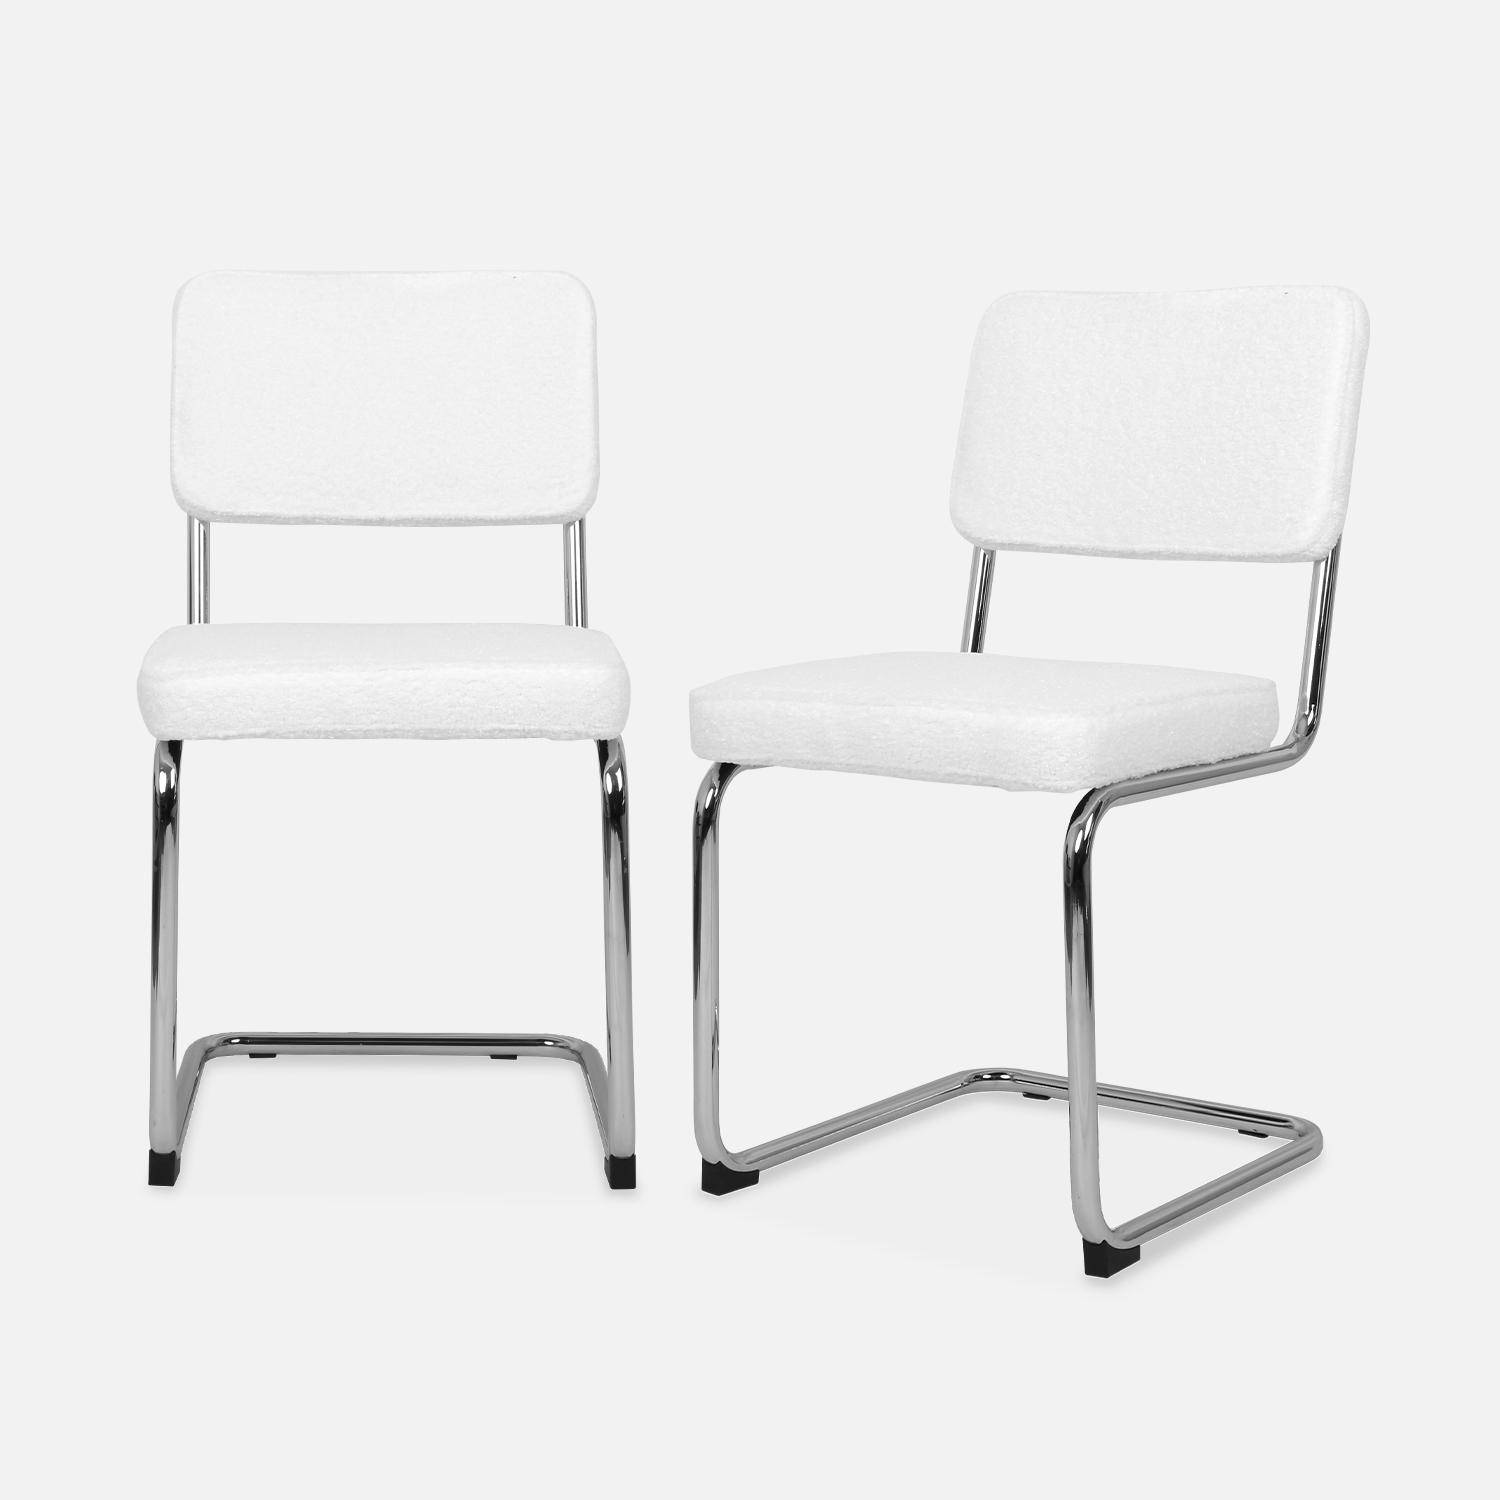 2 chaises cantilever - Maja - à bouclettes blanches , 46 x 54,5 x 84,5cm   Photo3